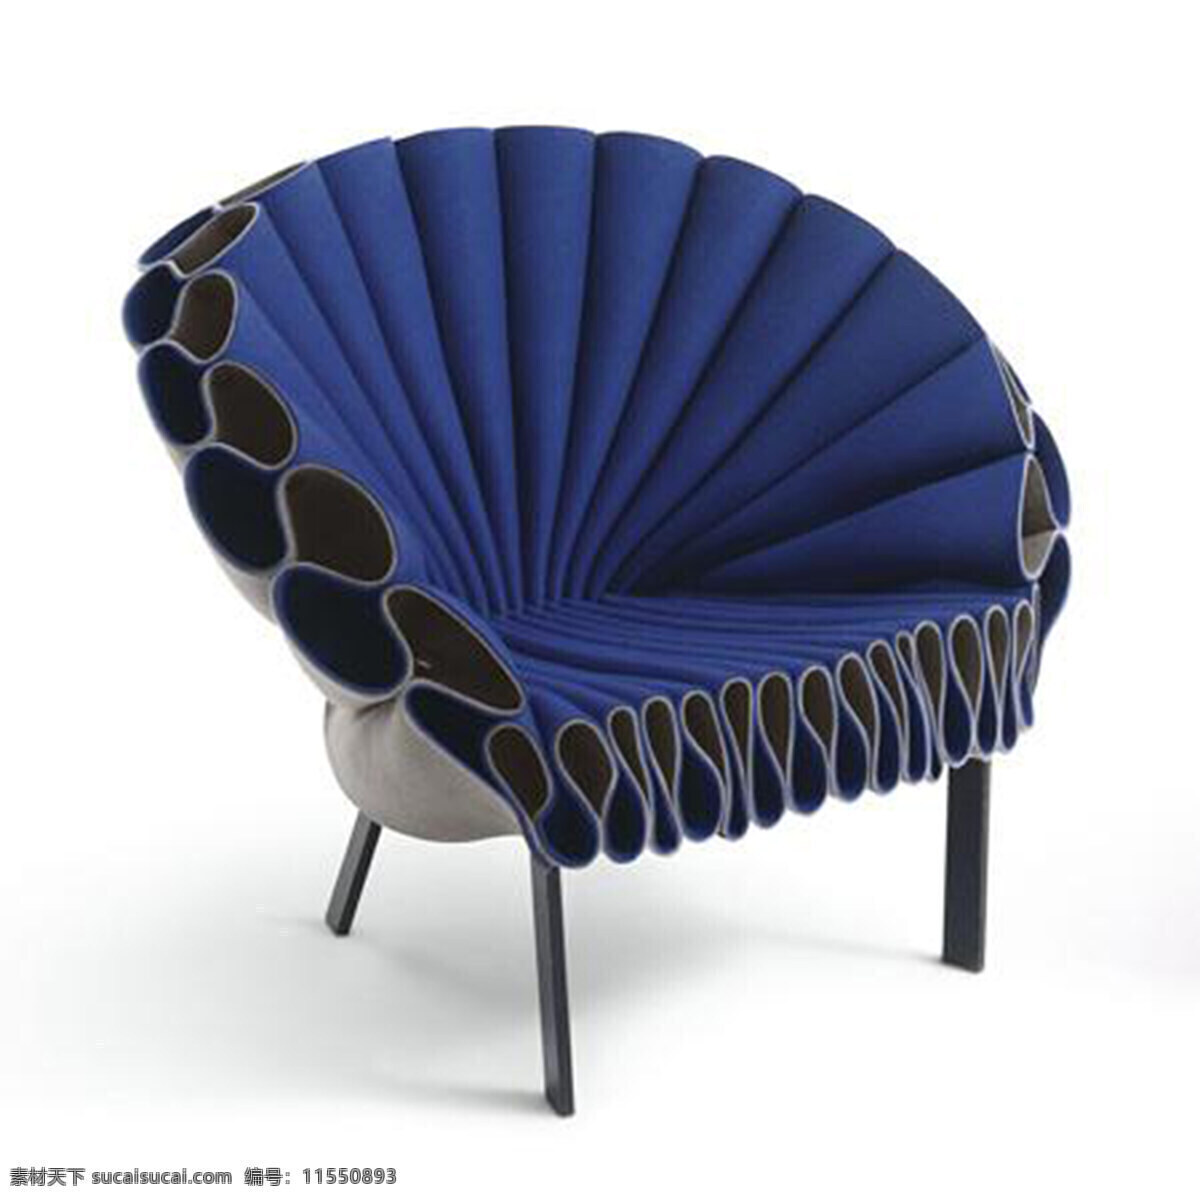 德 罗尔 孔雀 椅子 产品设计 创意 凳子 个性 工业设计 家居 孔雀椅子 生活